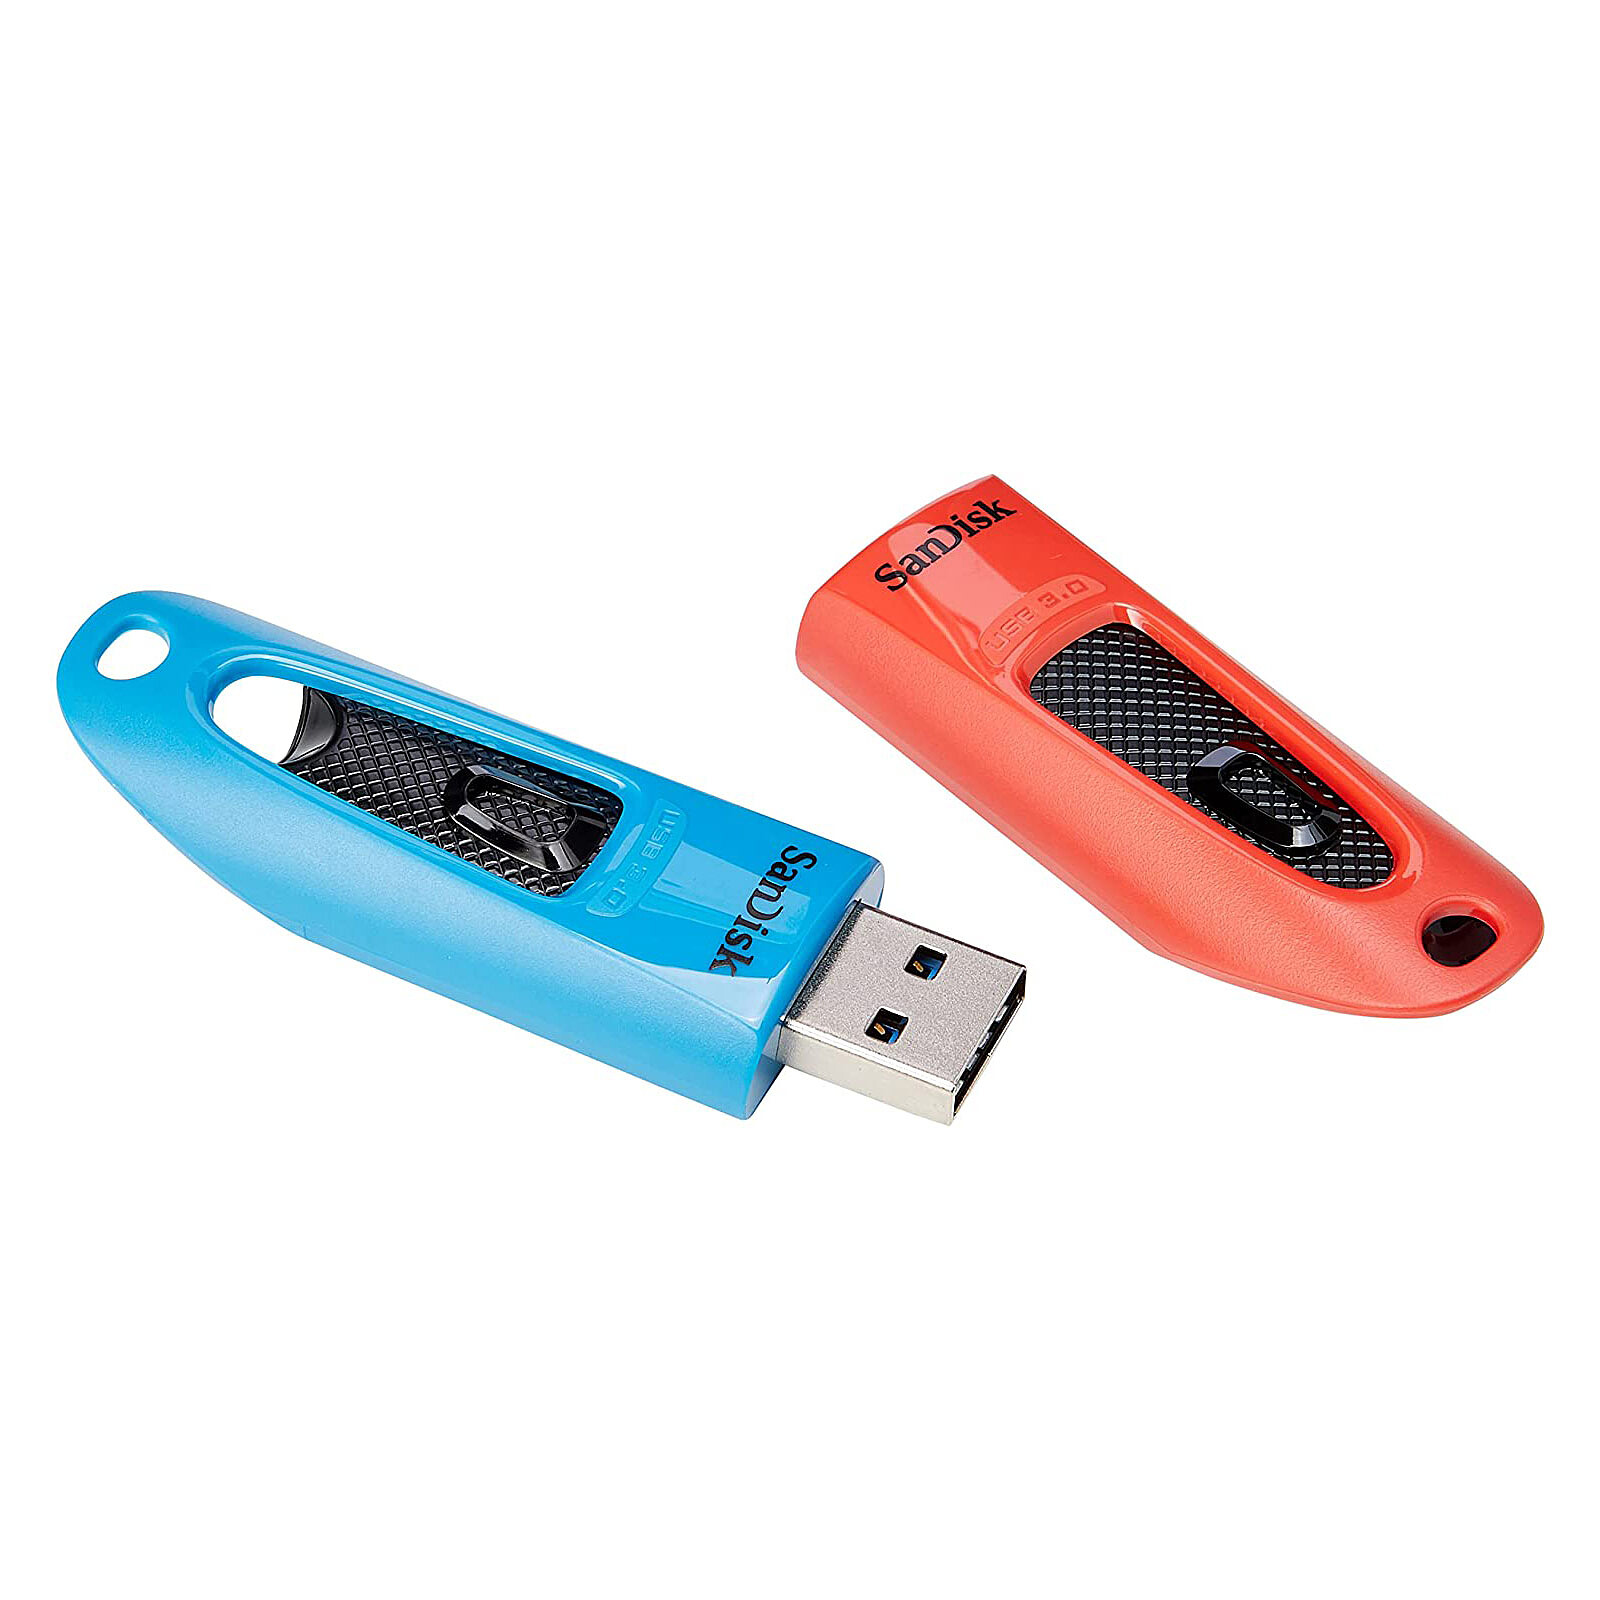 SanDisk Ultra USB 3.0 64 GB Blu/Rosso (Confezione da 2